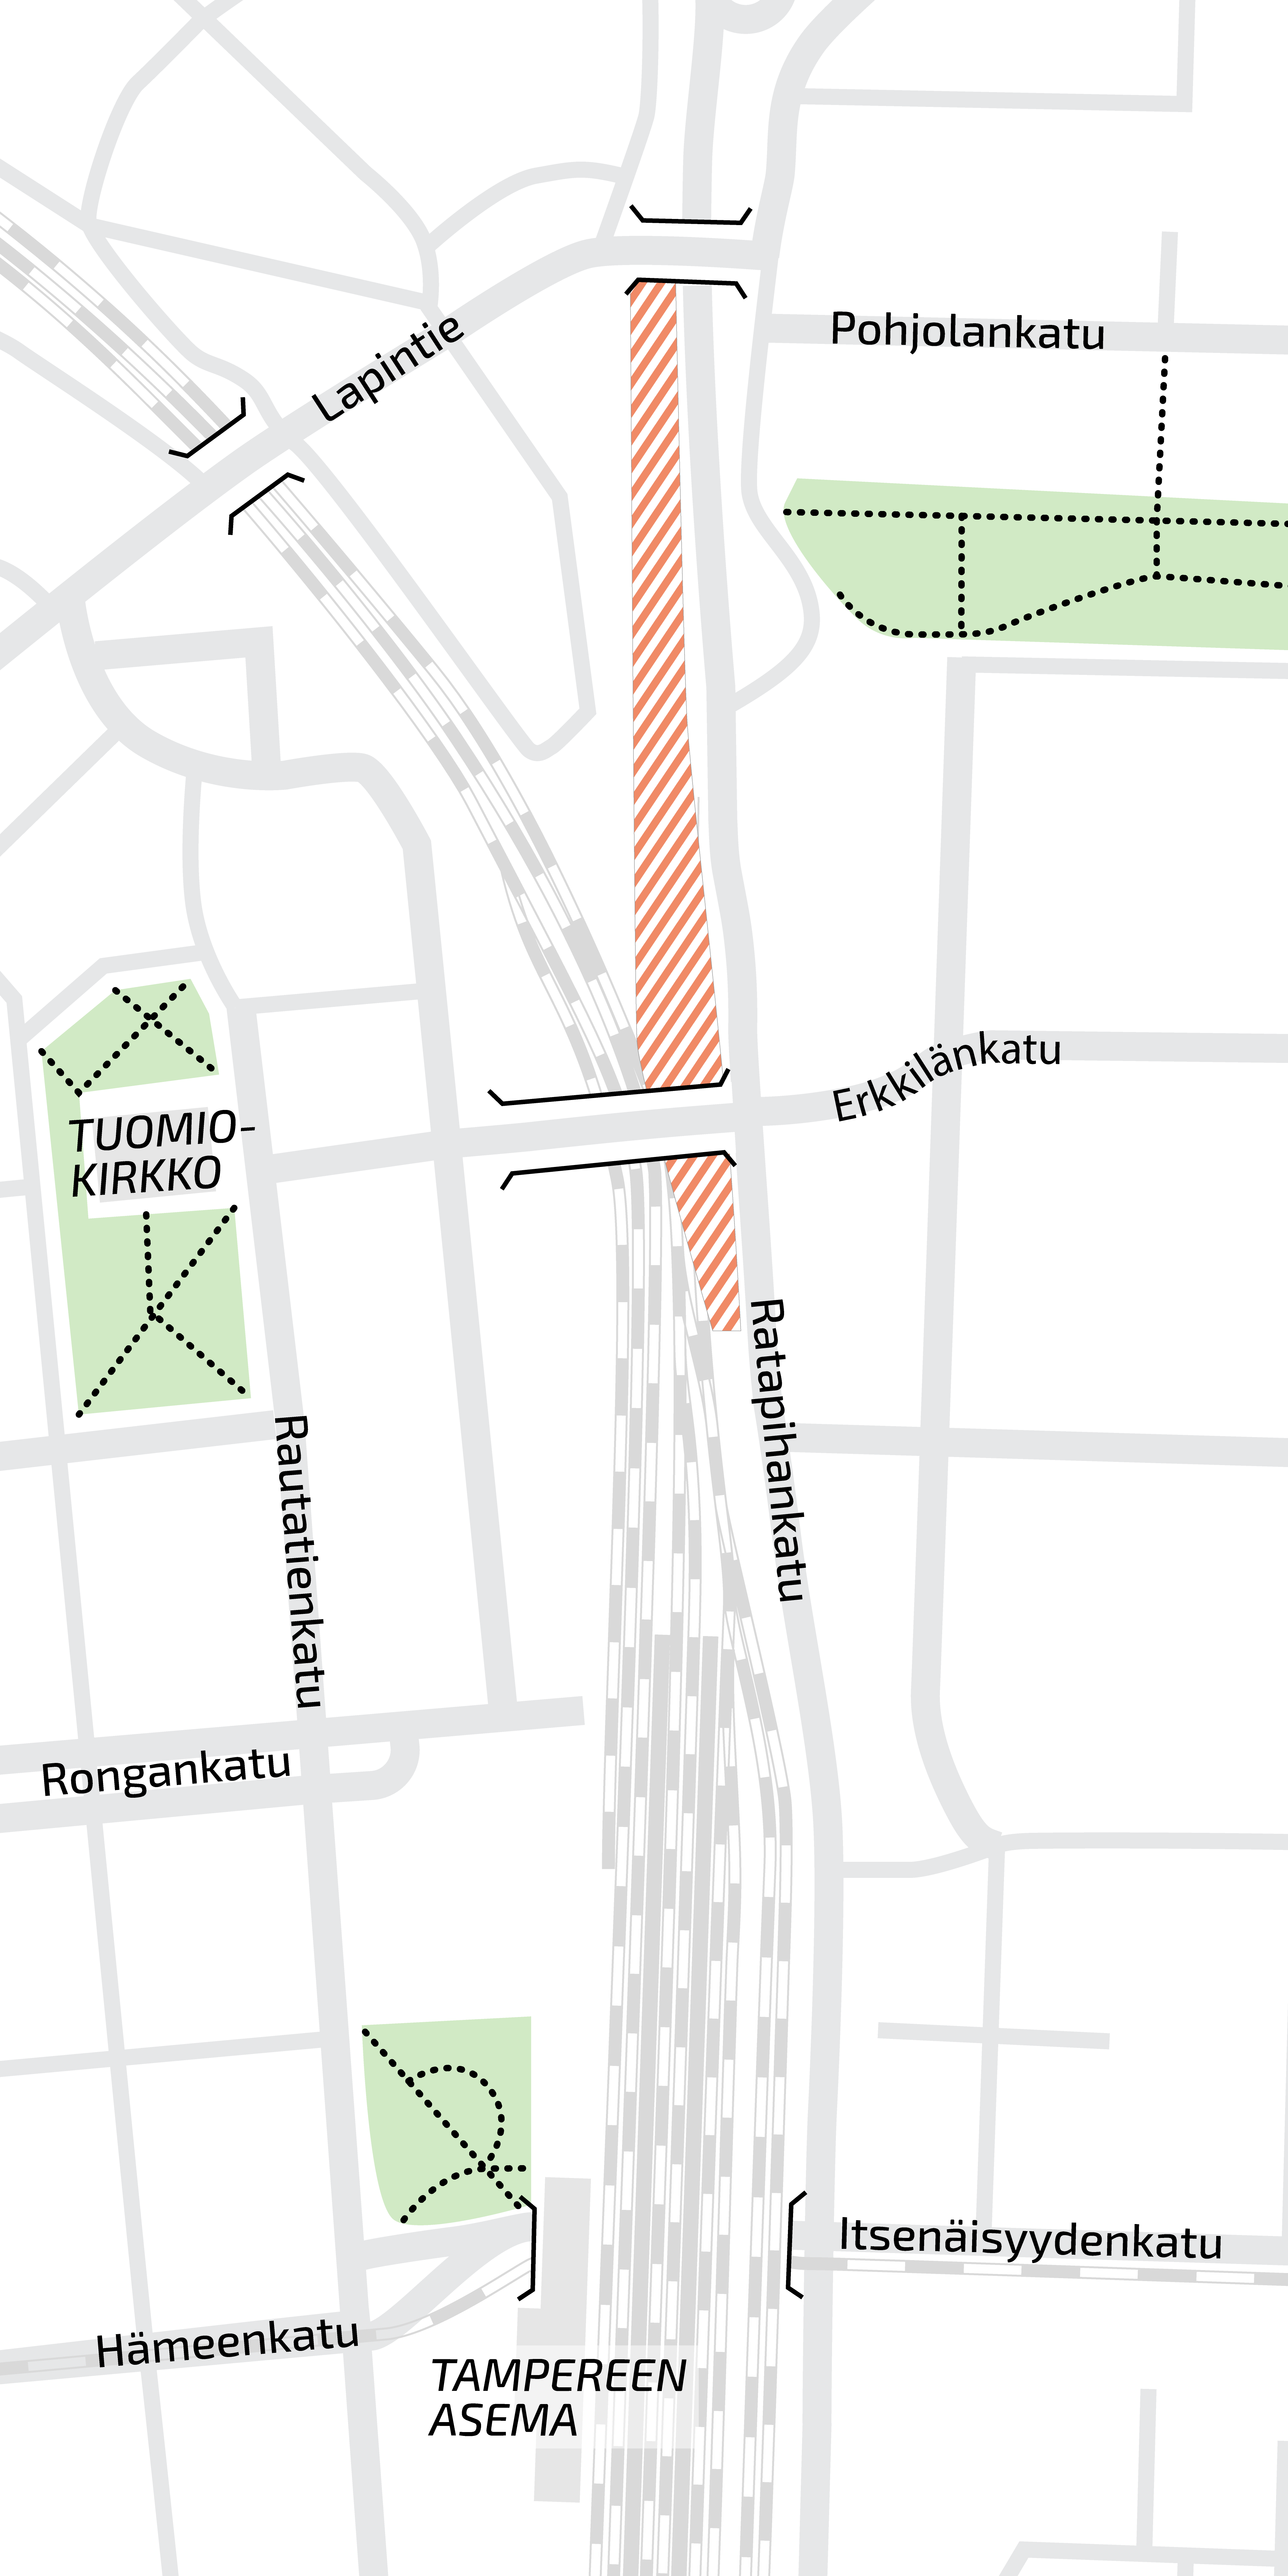 Kuvassa Tammelan kaupunginosan karttakuva, joka pohjoissuunnassa päättyy Lapintiehen ja Pohjolankatuun ja vastaavasti etelässä Hämeenkatuun ja Itsenäisyydenkatuun. Kaivuutyöalue on merkitty karttaan punaisella Pohjolankadun ja Erkkilänkadun väliselle ratapihalle. 